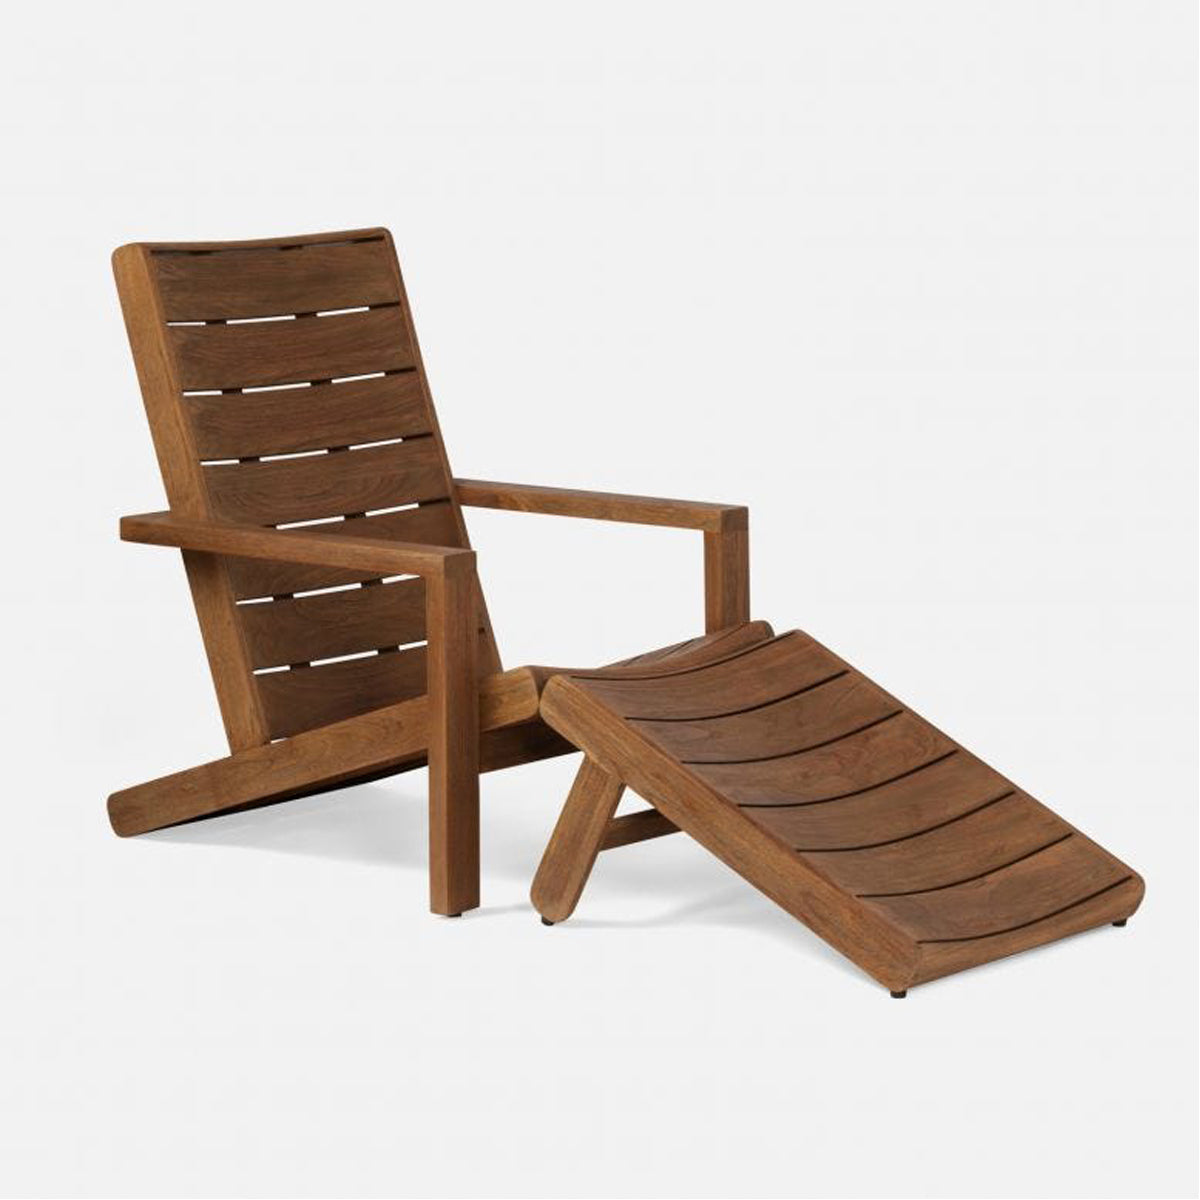 Made Goods Endecott Modern Teak Outdoor Lounge Chair